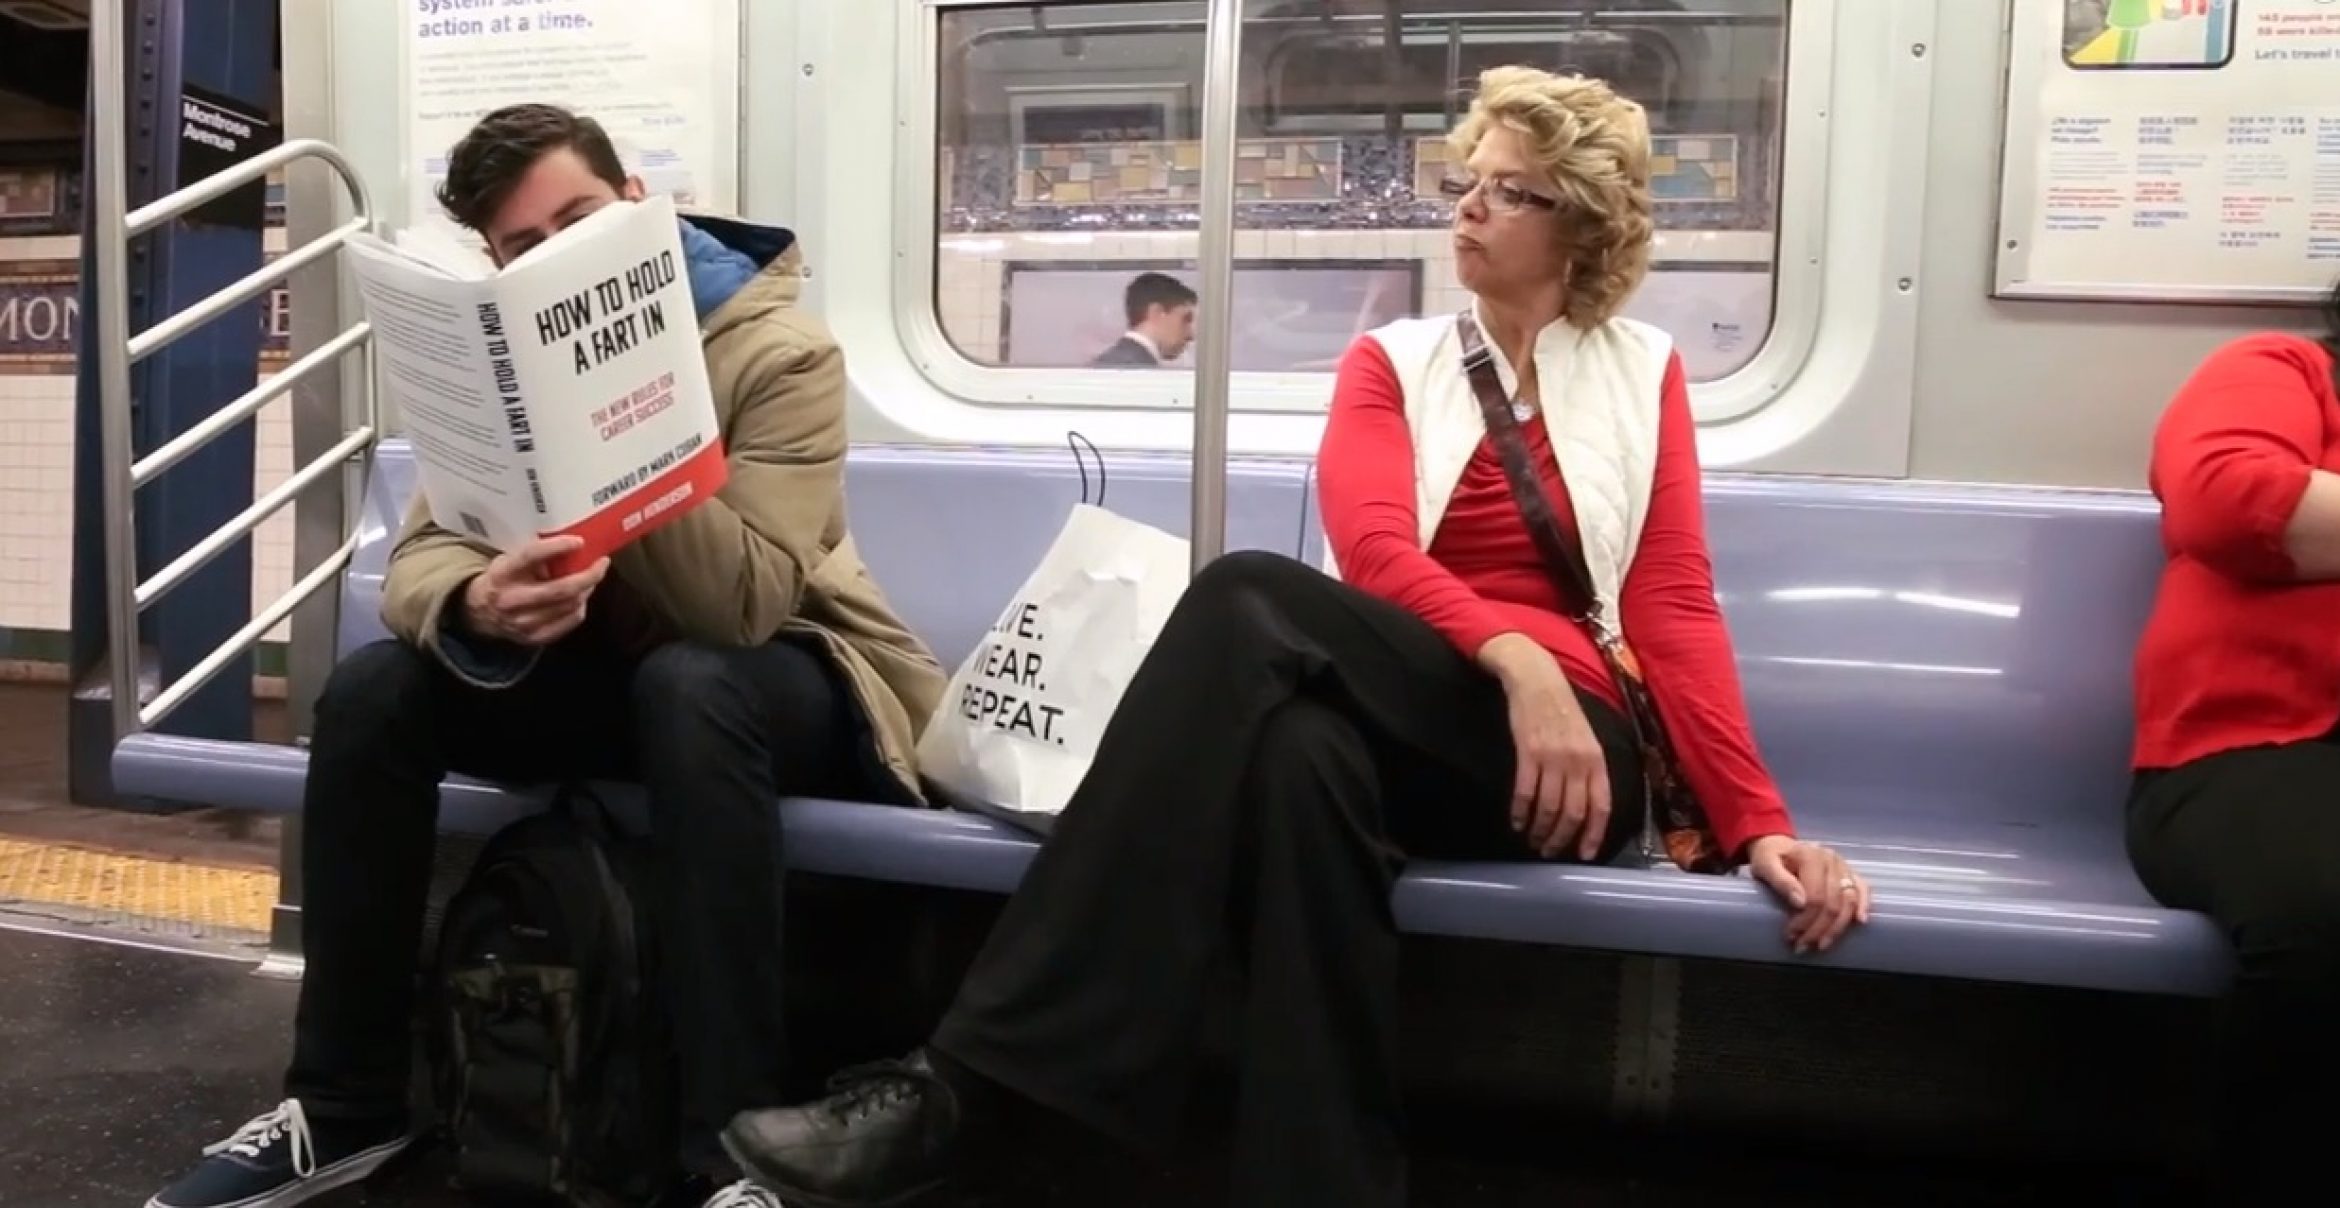 Lesen in der U-Bahn: die Reaktionen der Mitmenschen auf Fake-Buchtitel gefilmt